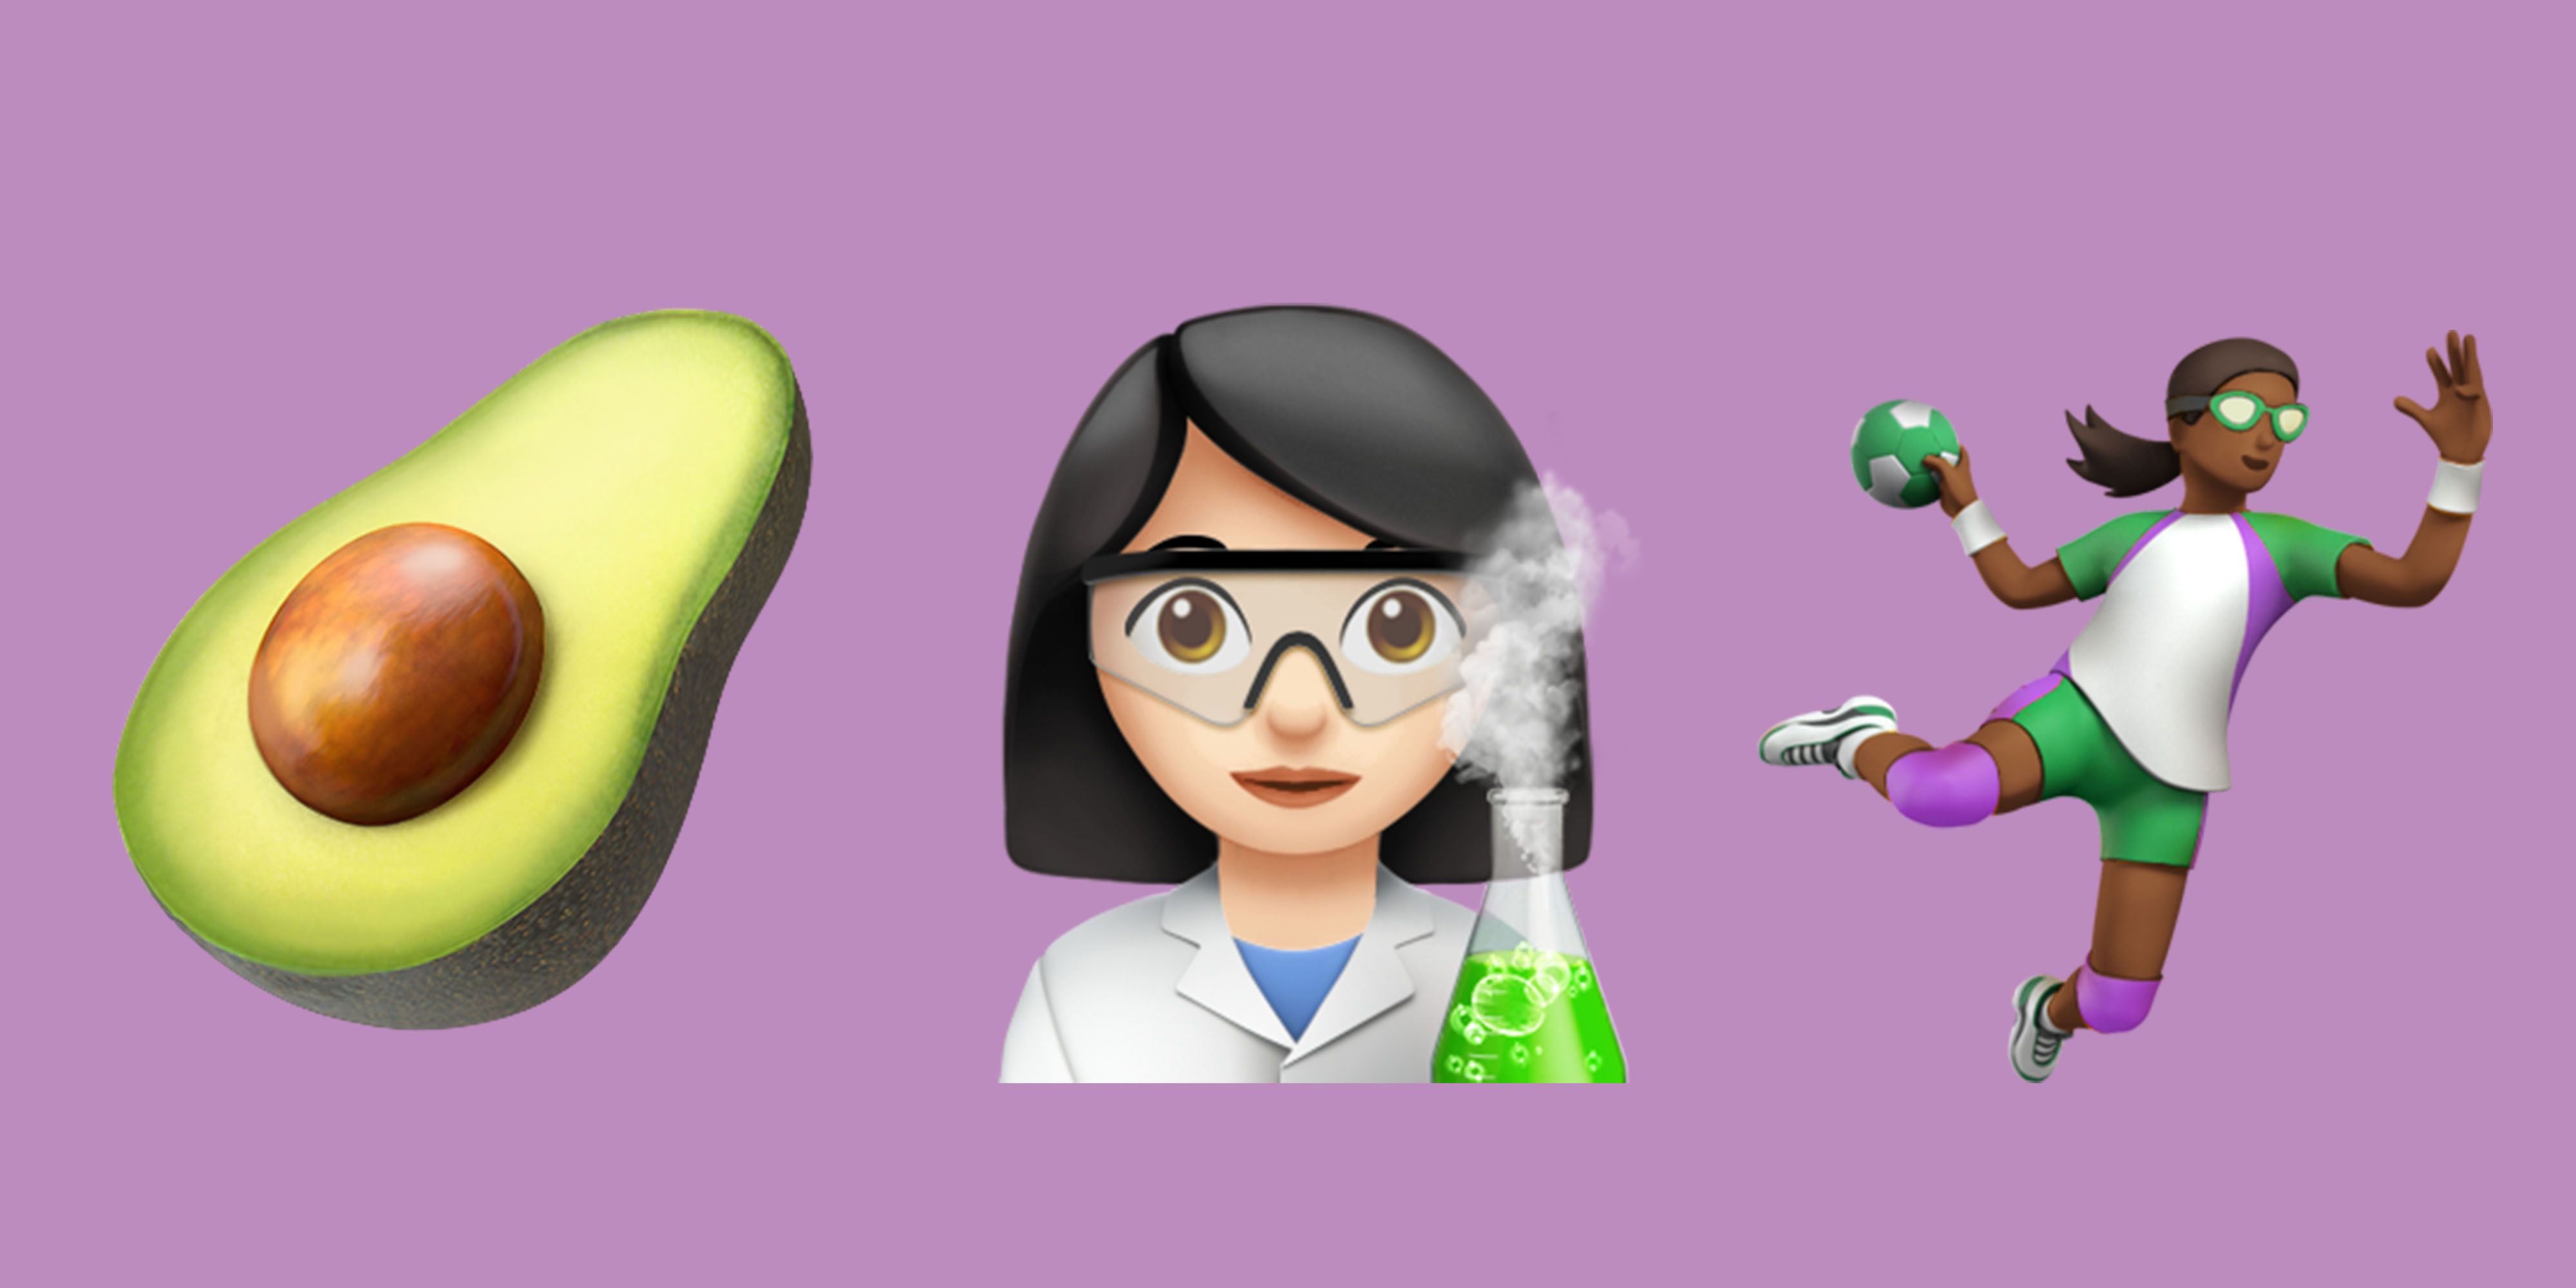 scientist emoji 2